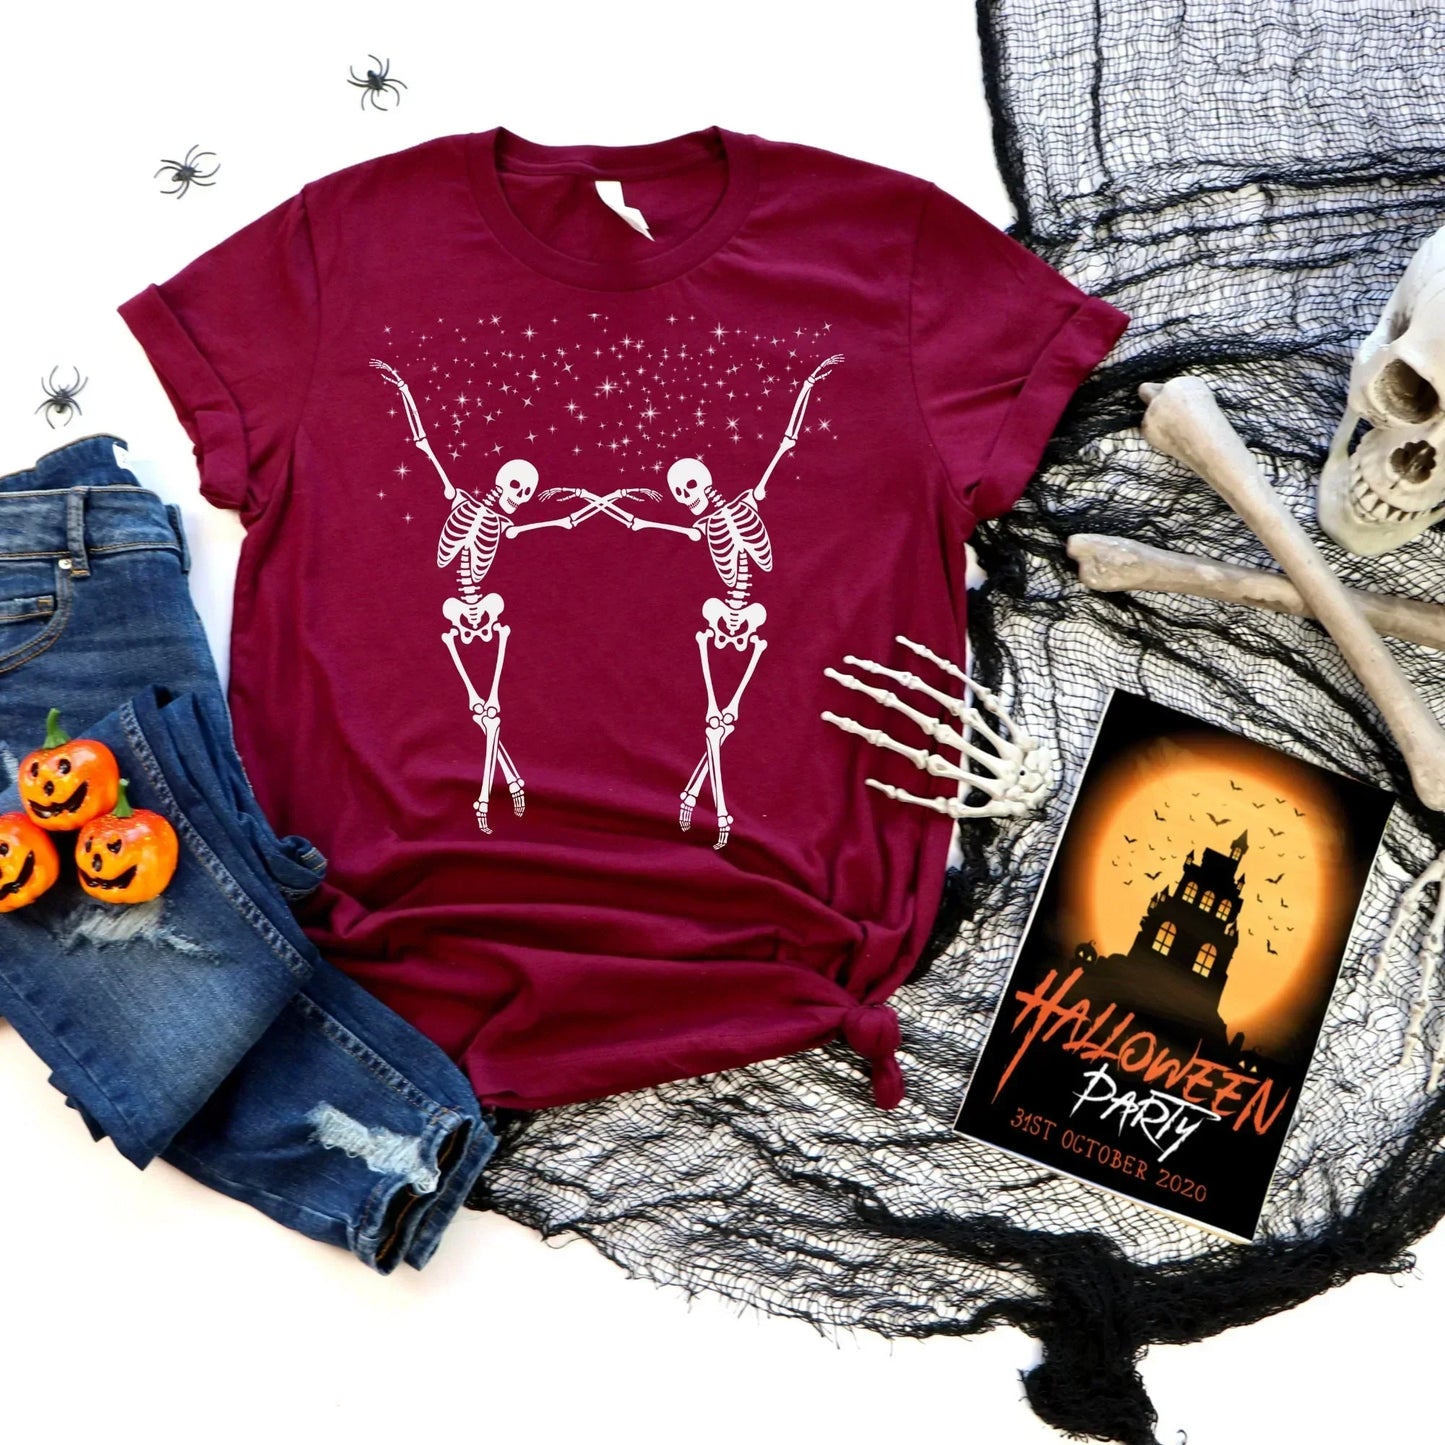 Halloween Sweatshirt, Spooky Season Tshirt, Dancing Skeletons, Fall Sweater, Skeleton Shirt, Women's Hoodie, Gift for Her, Fun Party Tee